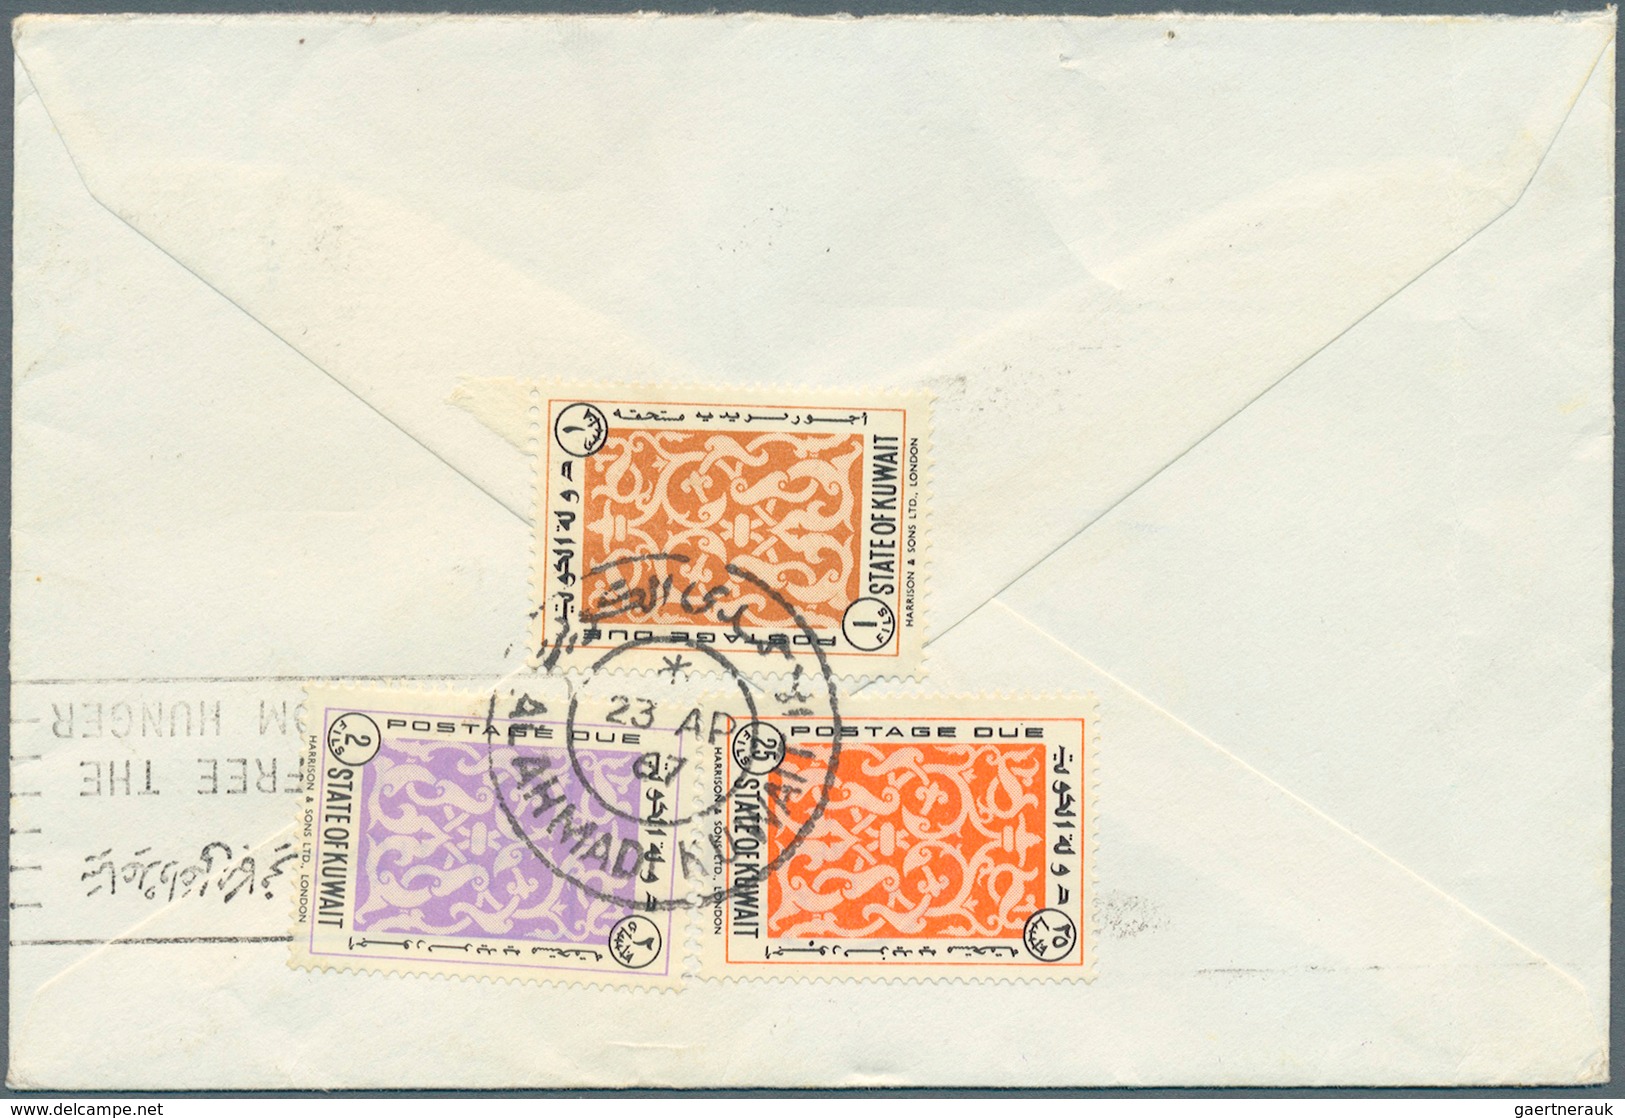 Kuwait - Portomarken: 1963 Kuwait Postage Due Stamps 1f., 2f. And 25f. Tied By Bilingual "AL AHMADI - Koeweit